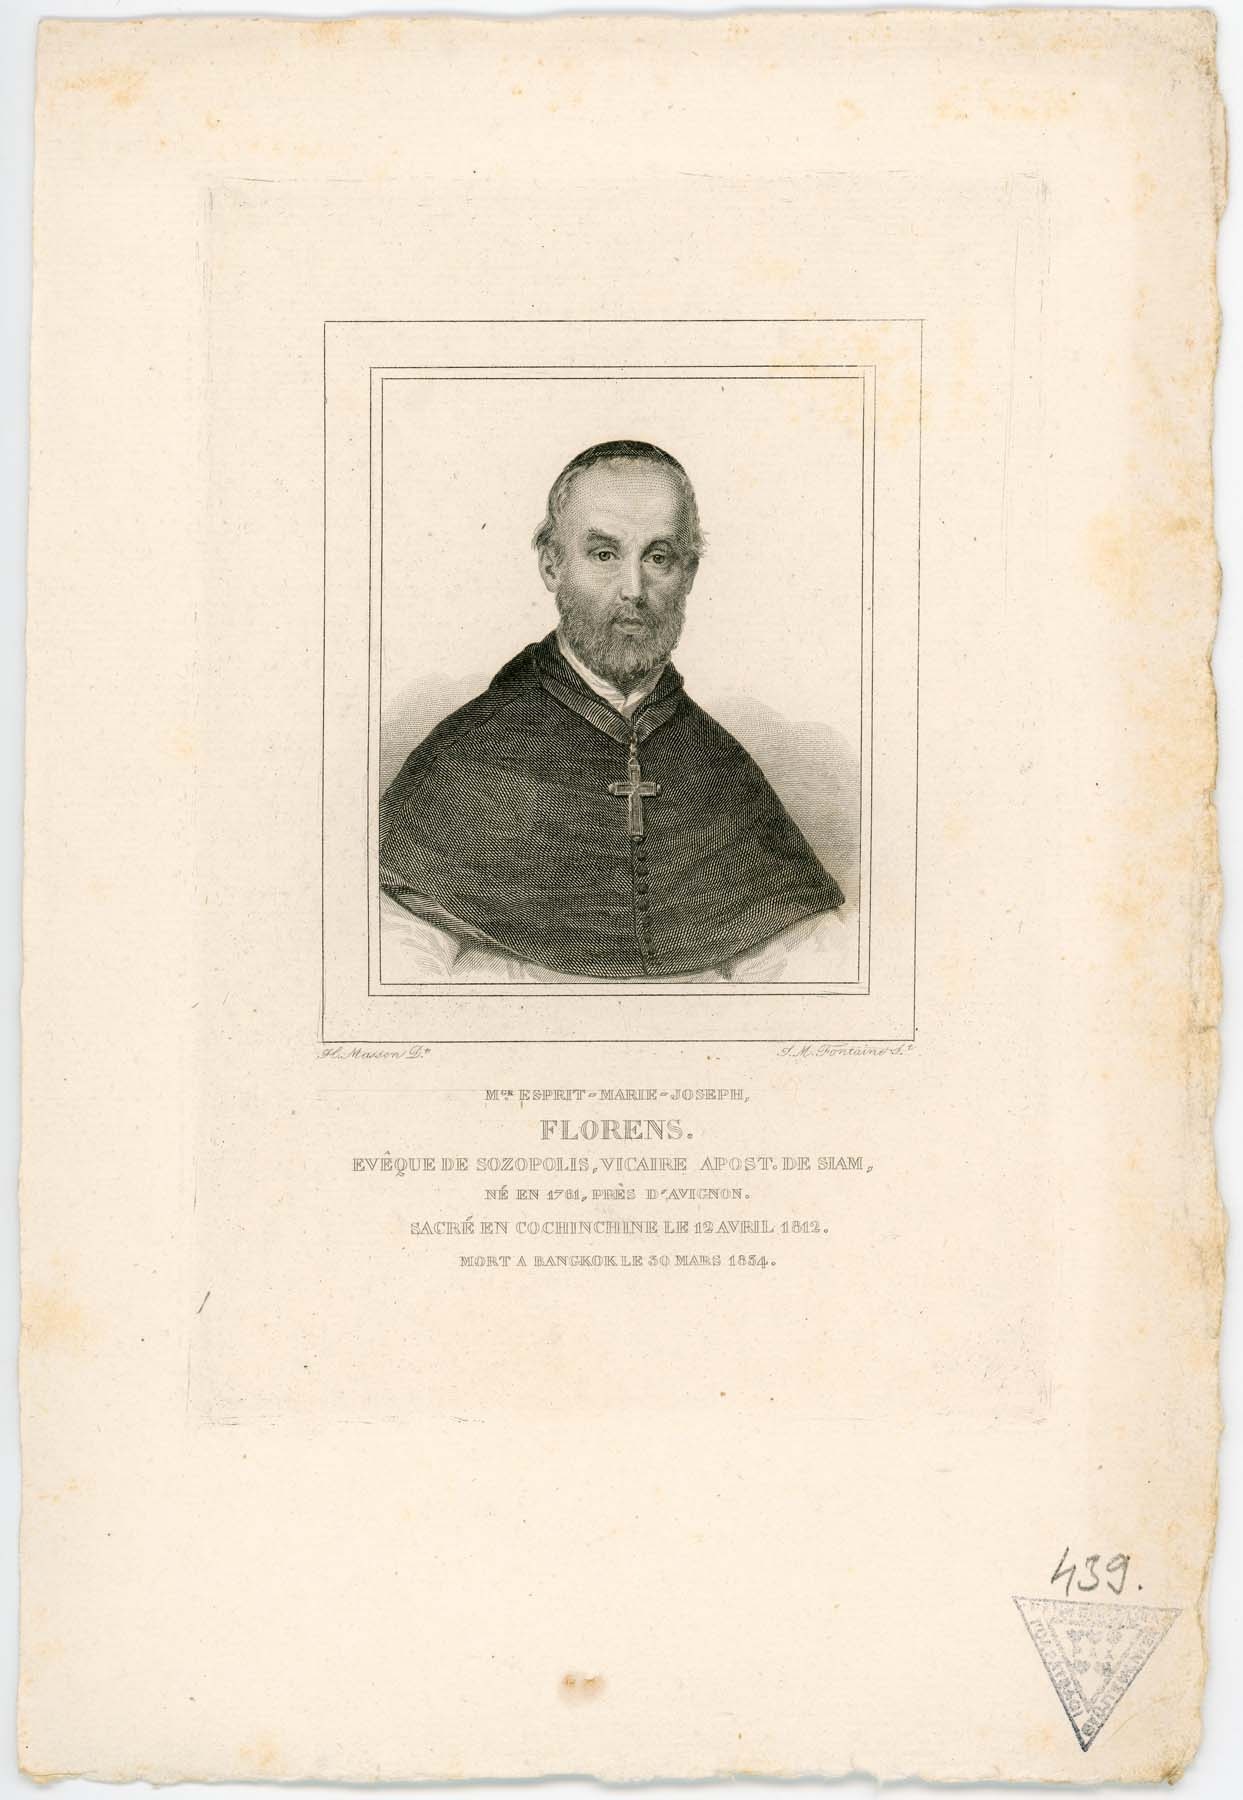 Espirit-Marie-Joseph Florens sozopolisi püspök 1761-1834 (Pannonhalma Főapátsági Múzeum CC BY-NC-SA)